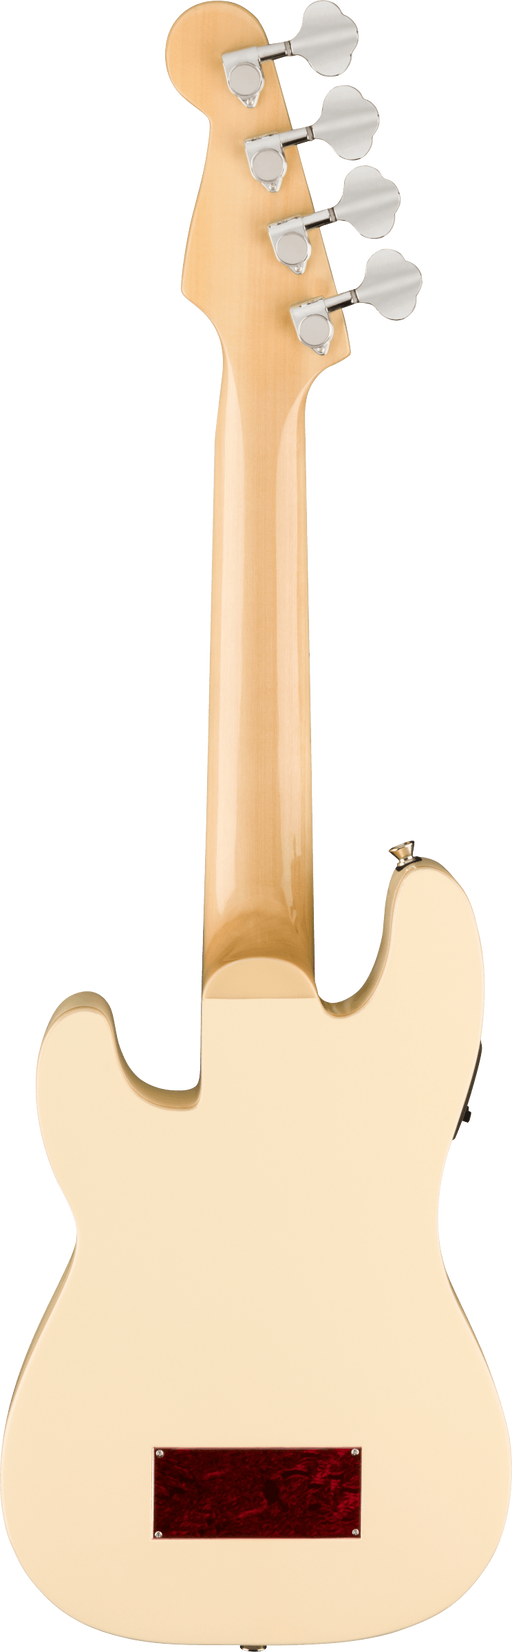 Fender Fullerton Precision Bass Ukulele, Olympic White - Fair Deal Music